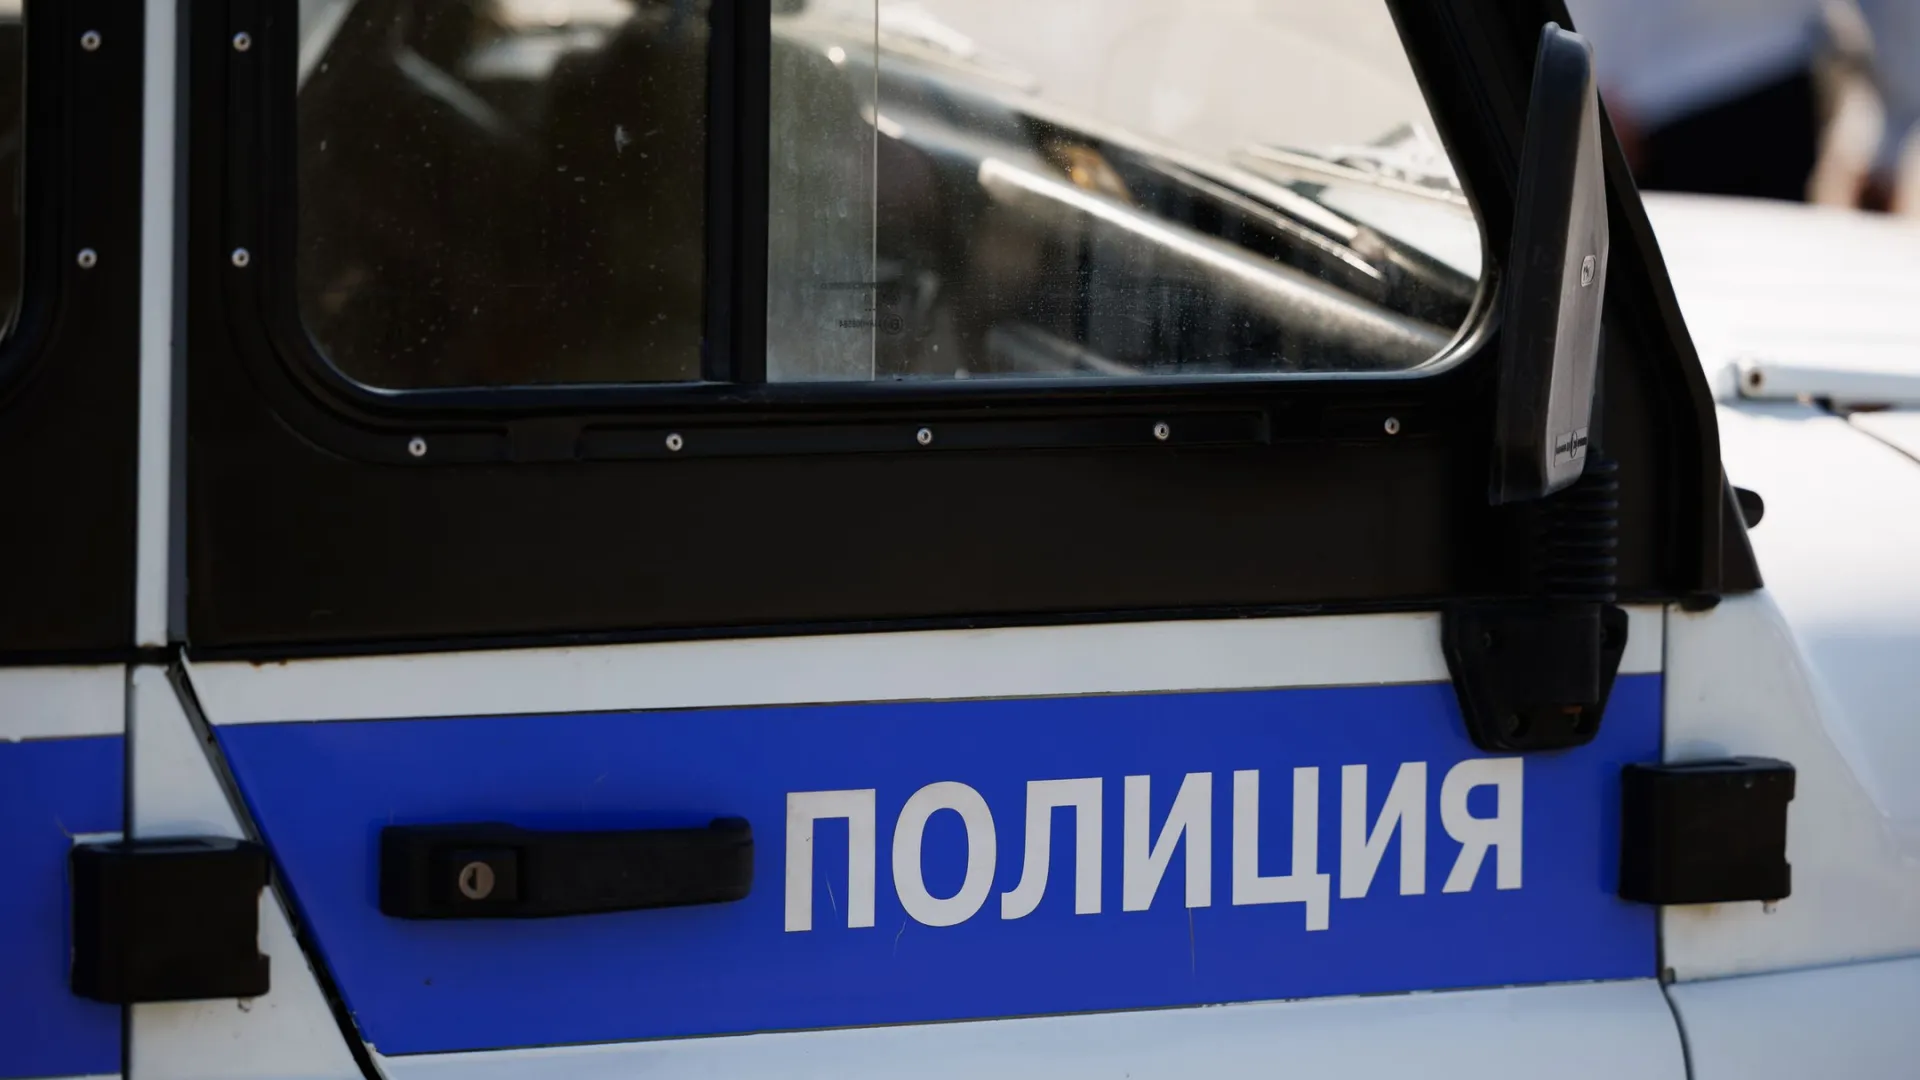 Шесть иностранцев нарушили миграционное законодательство. Фото: Юлия Чудинова / «Ямал-Медиа»